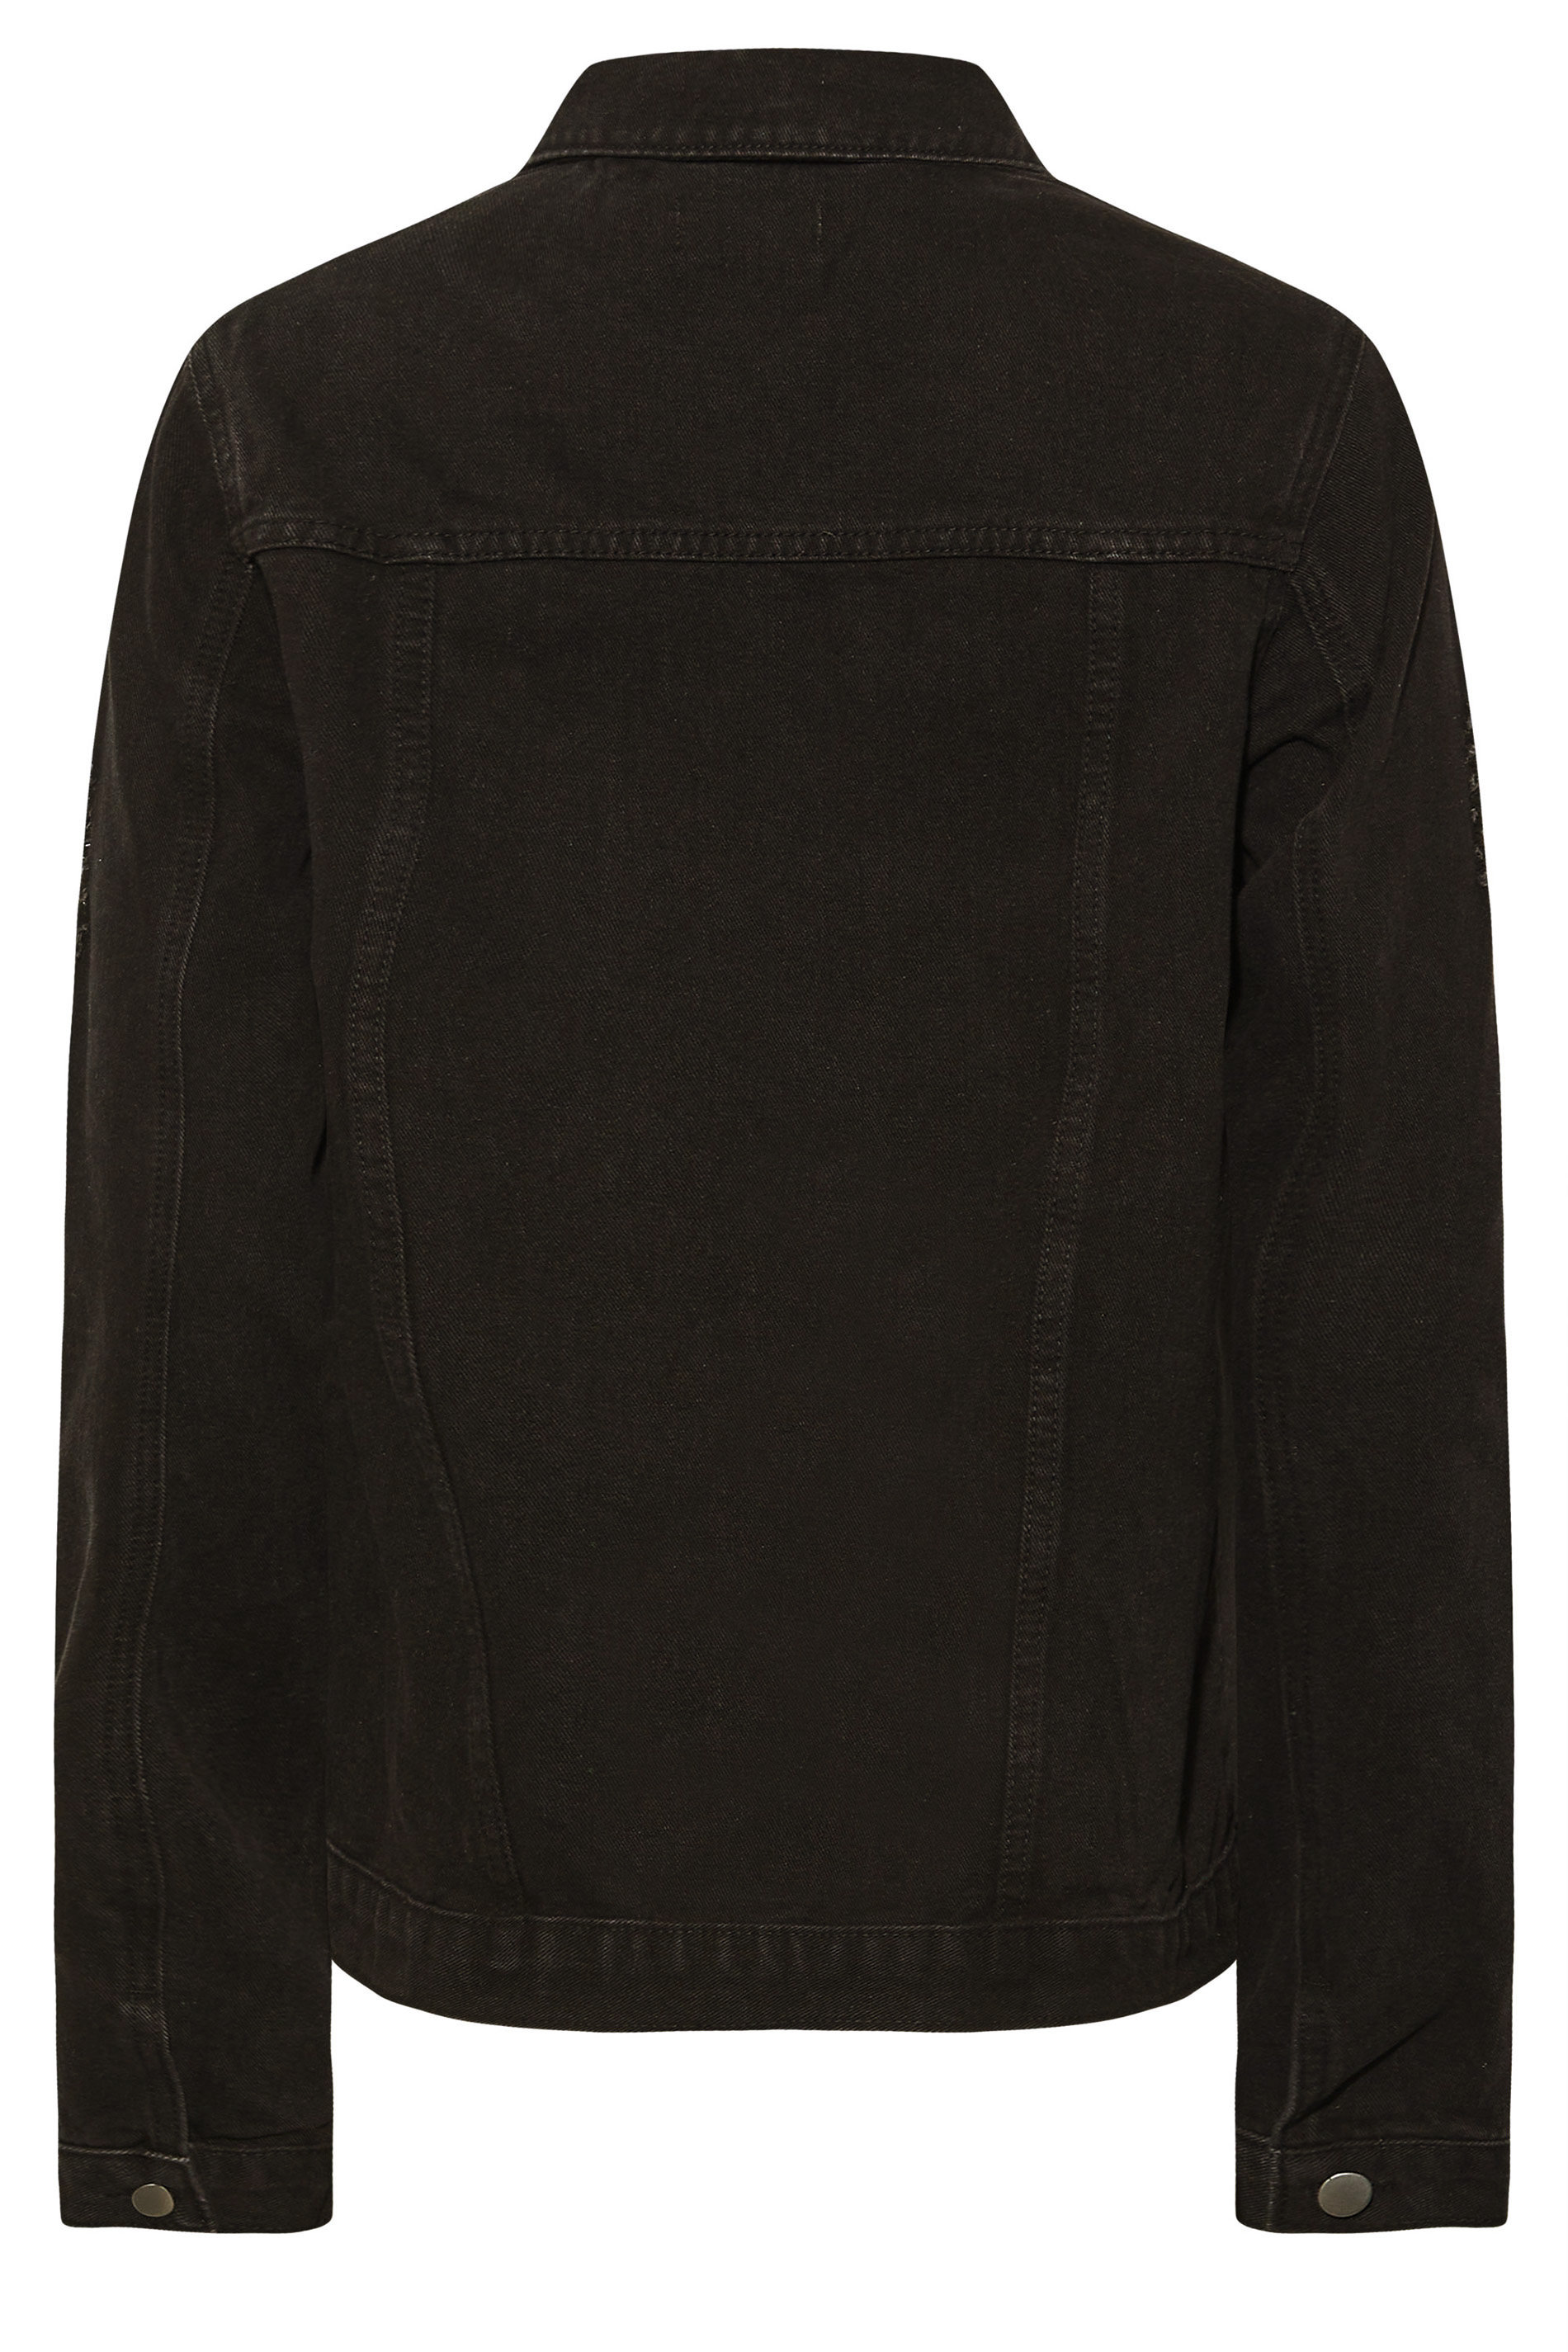 Tall Women's LTS Black Distressed Denim Jacket | Long Tall Sally 3